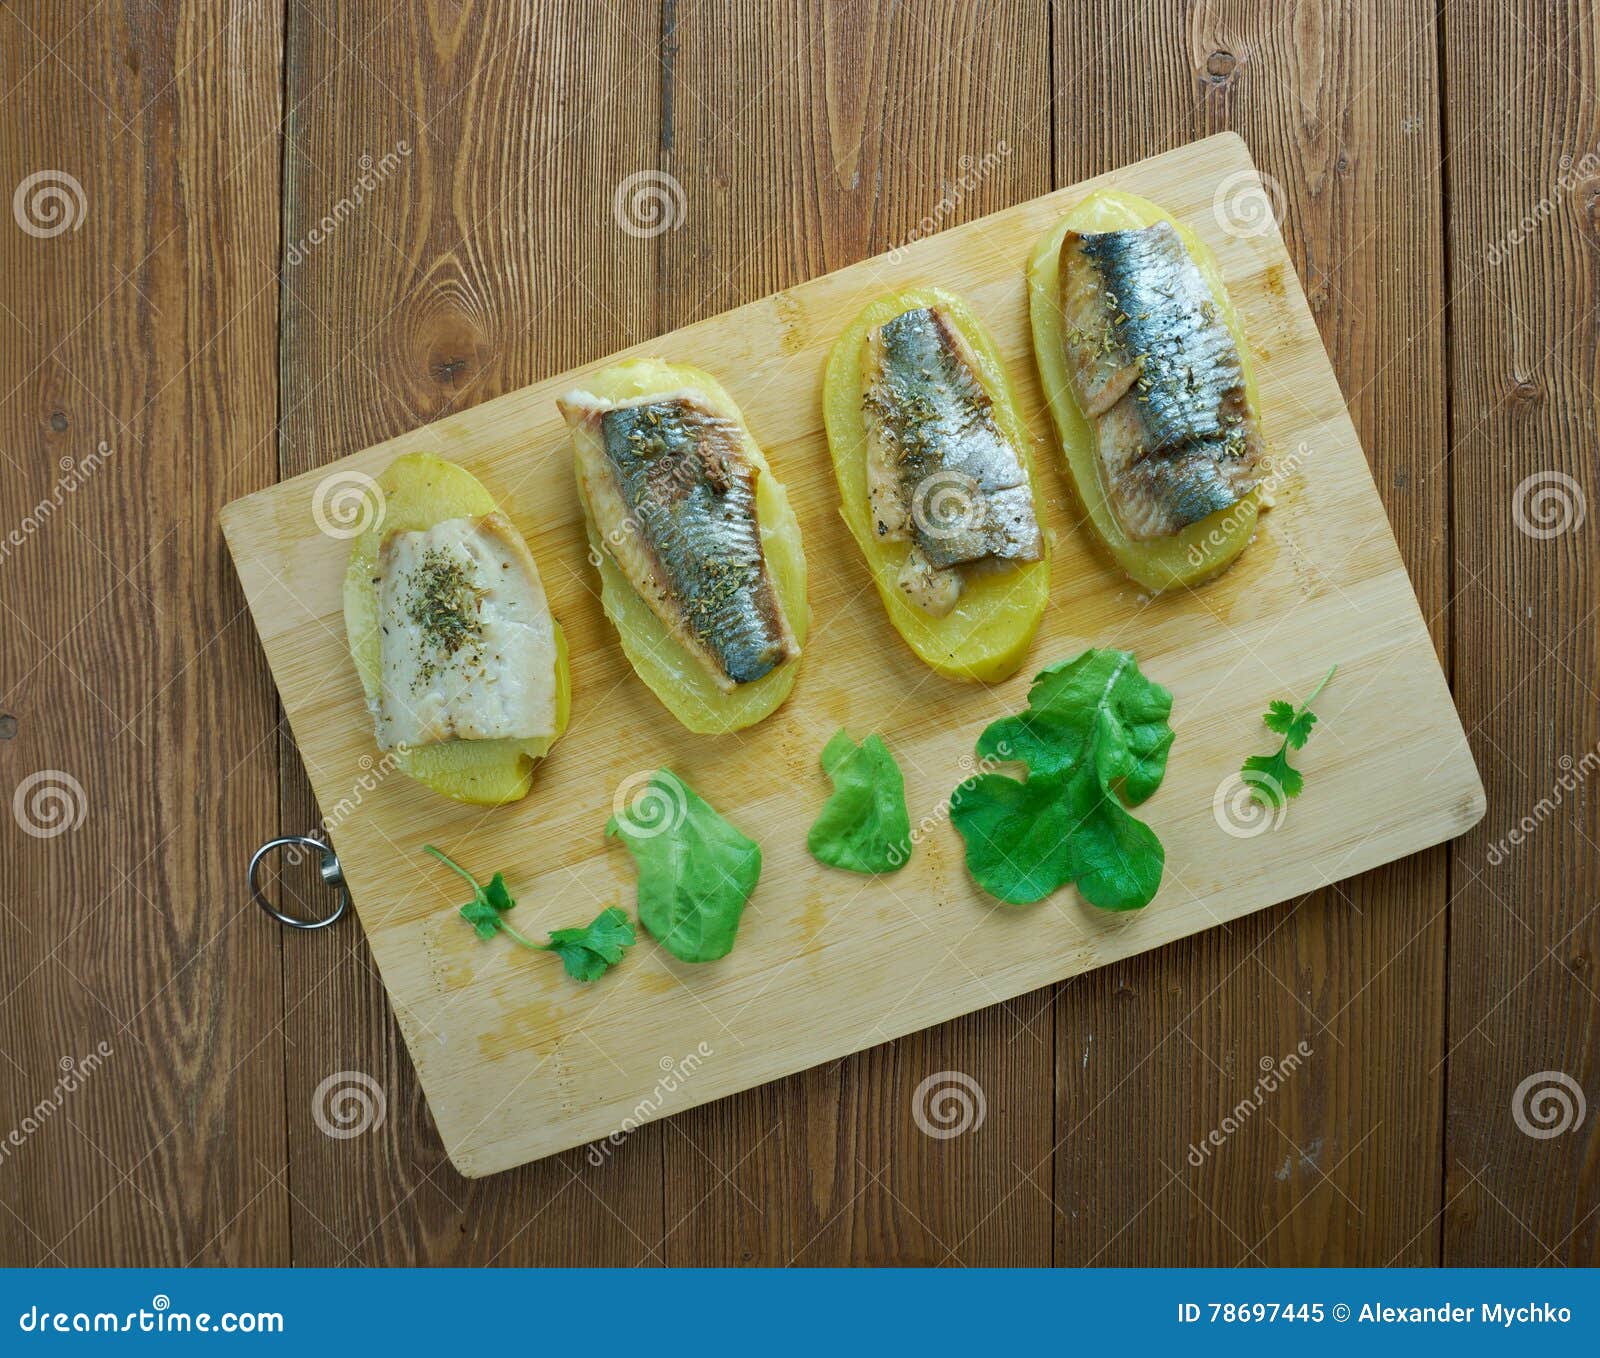 eel with baked potatoes